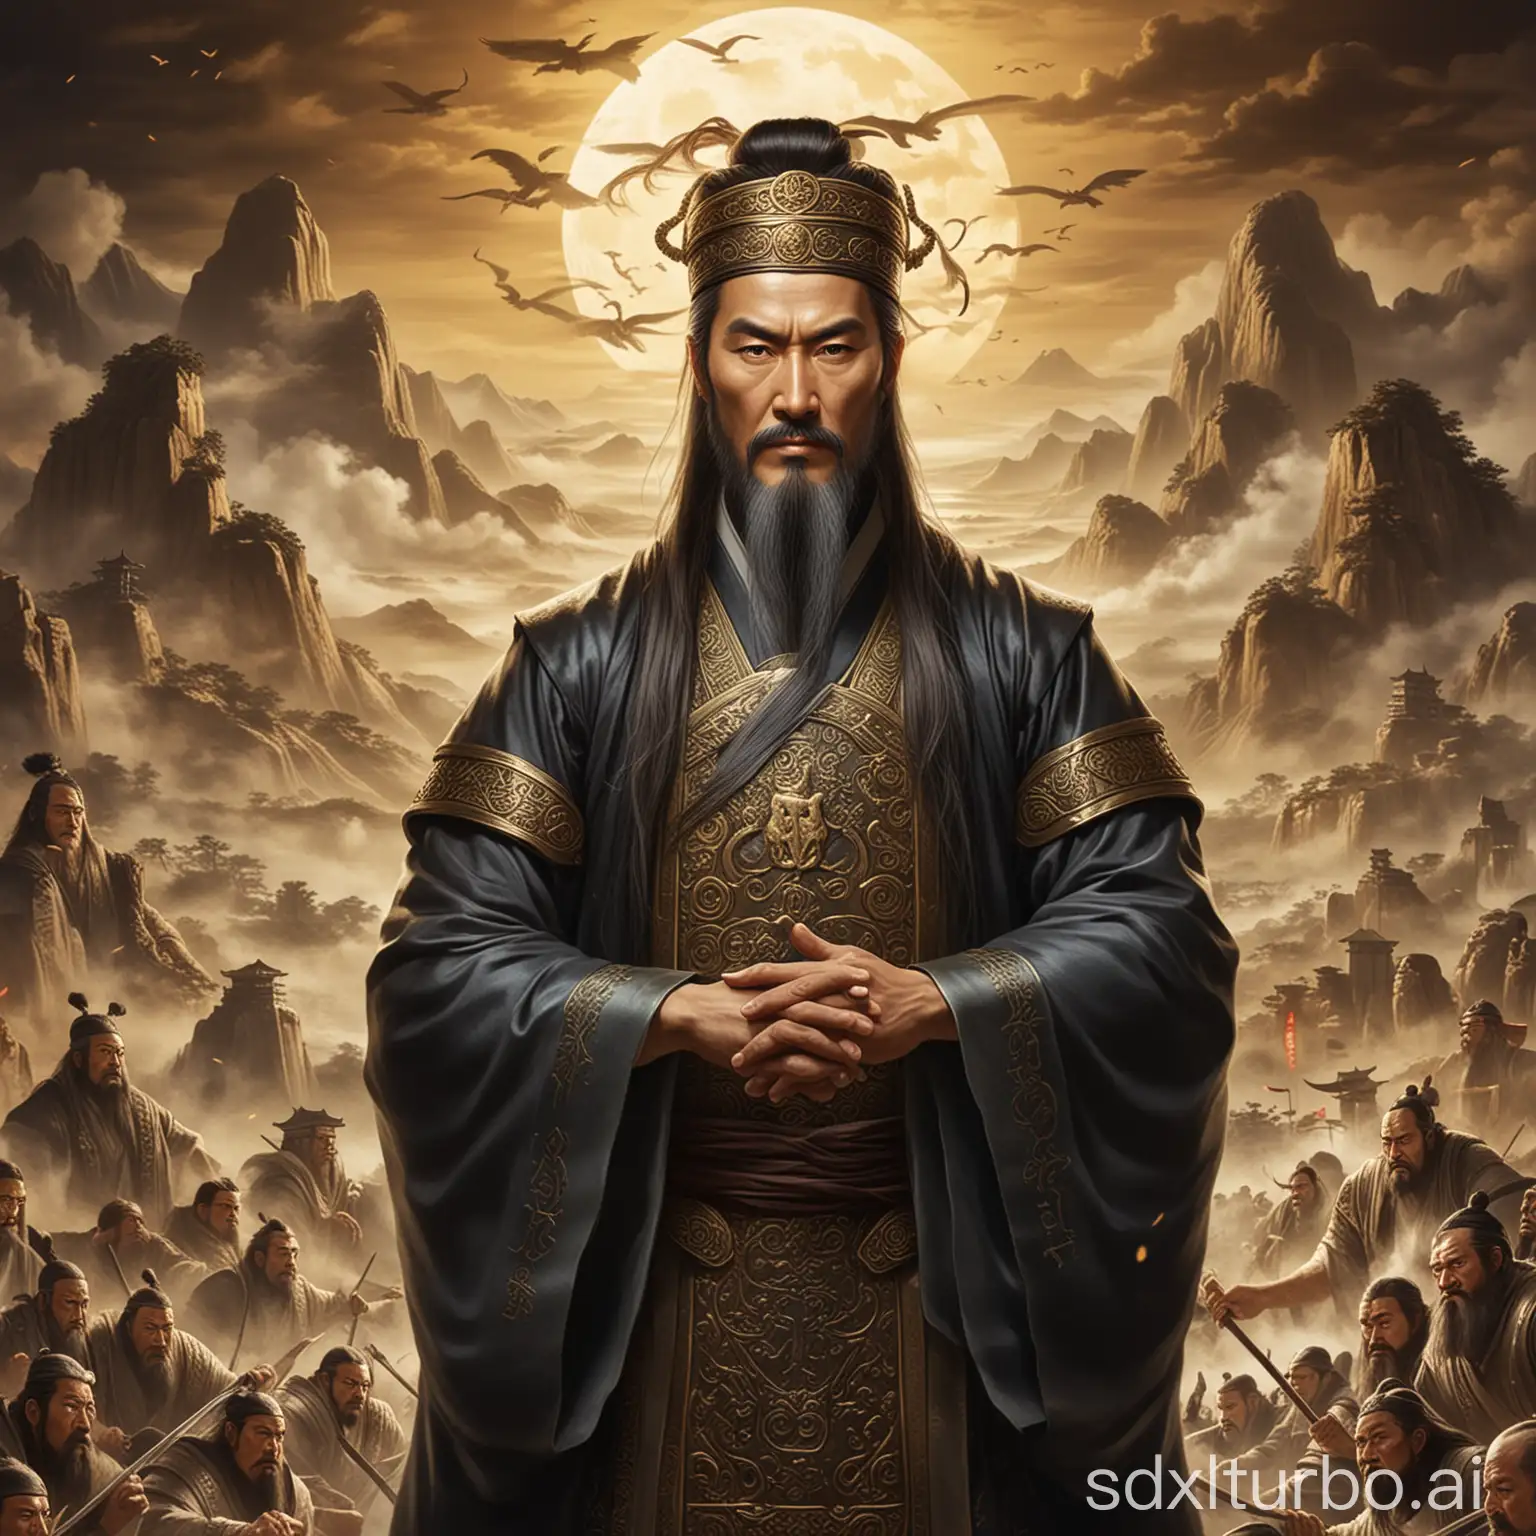 Qin Shi Huang unified the world